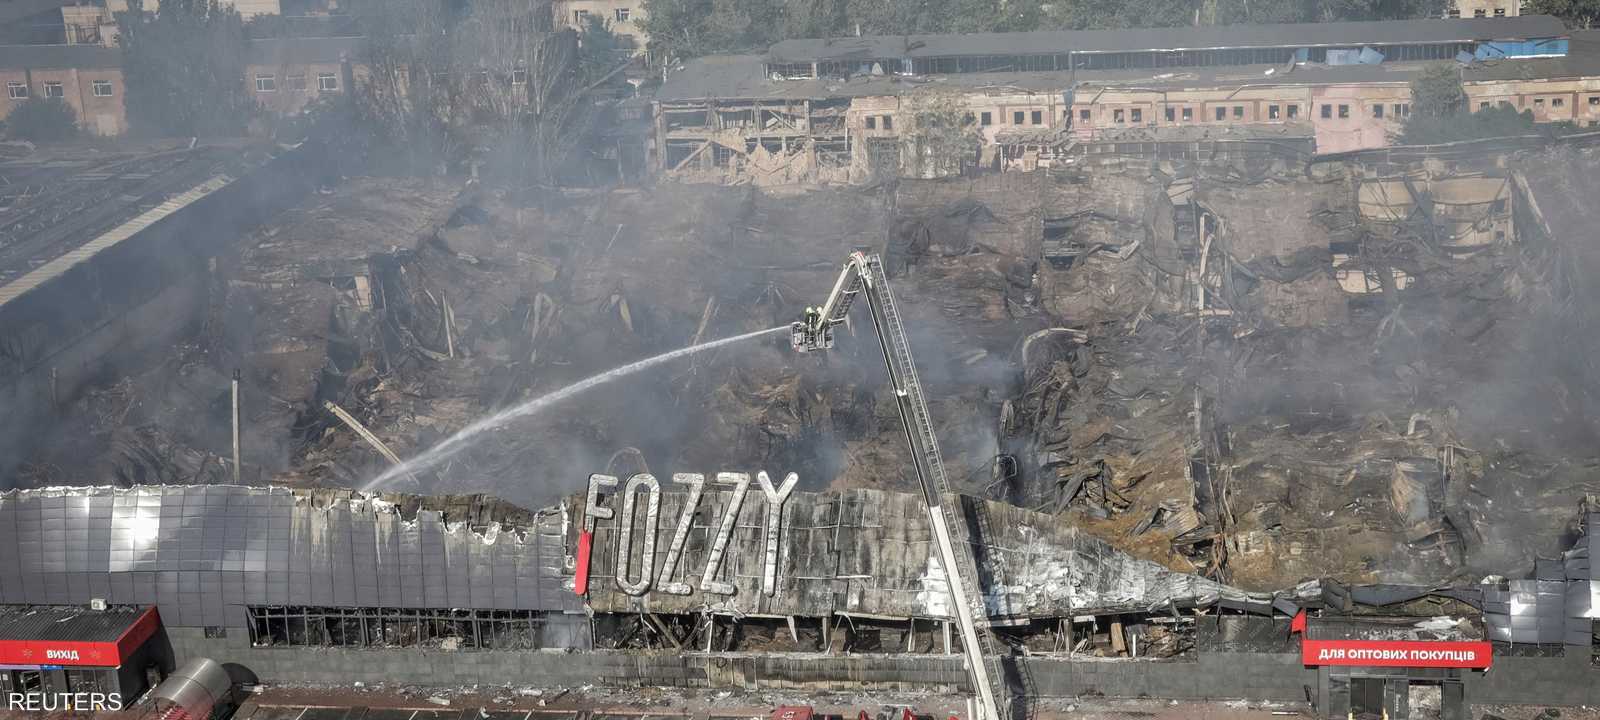 شظايا الصواريخ التي تم اعتراضها تسببت بحرائق في أوديسا